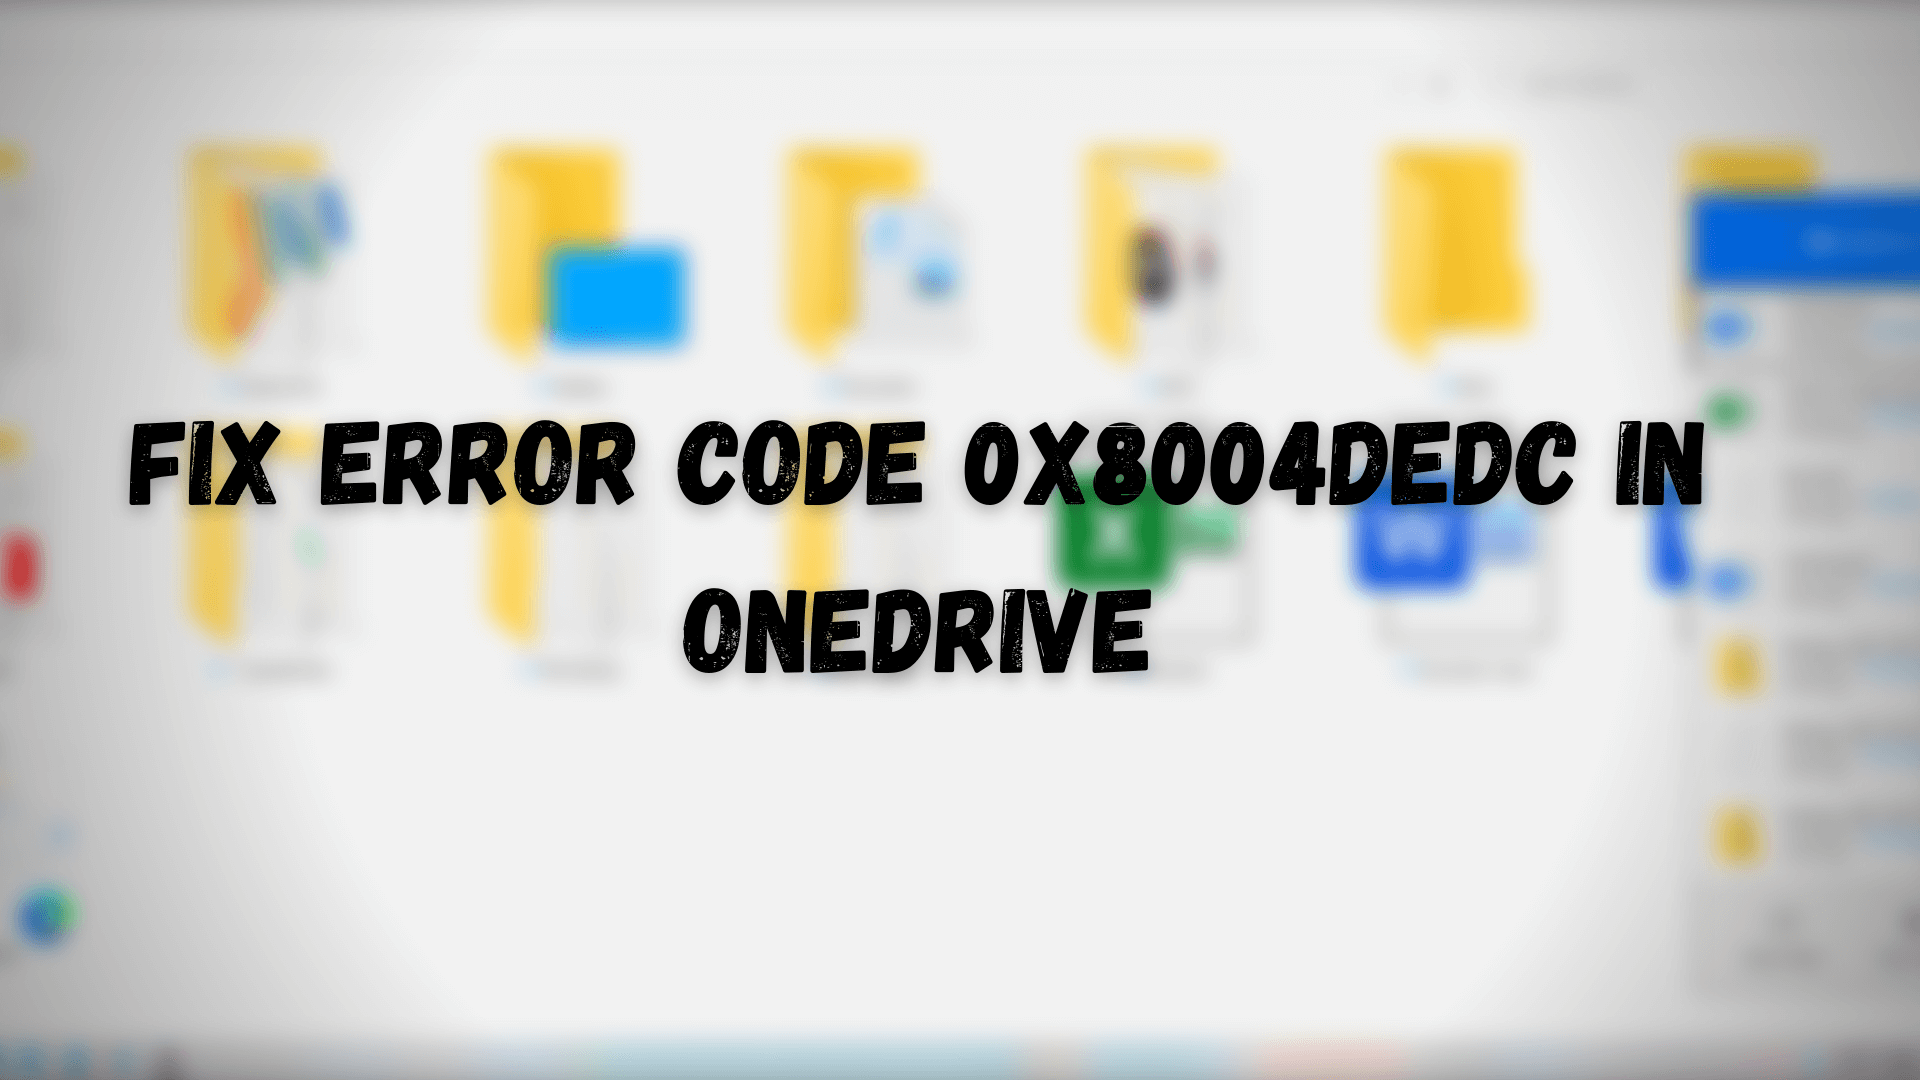 Fix Error Code 0x8004dedc in OneDrive